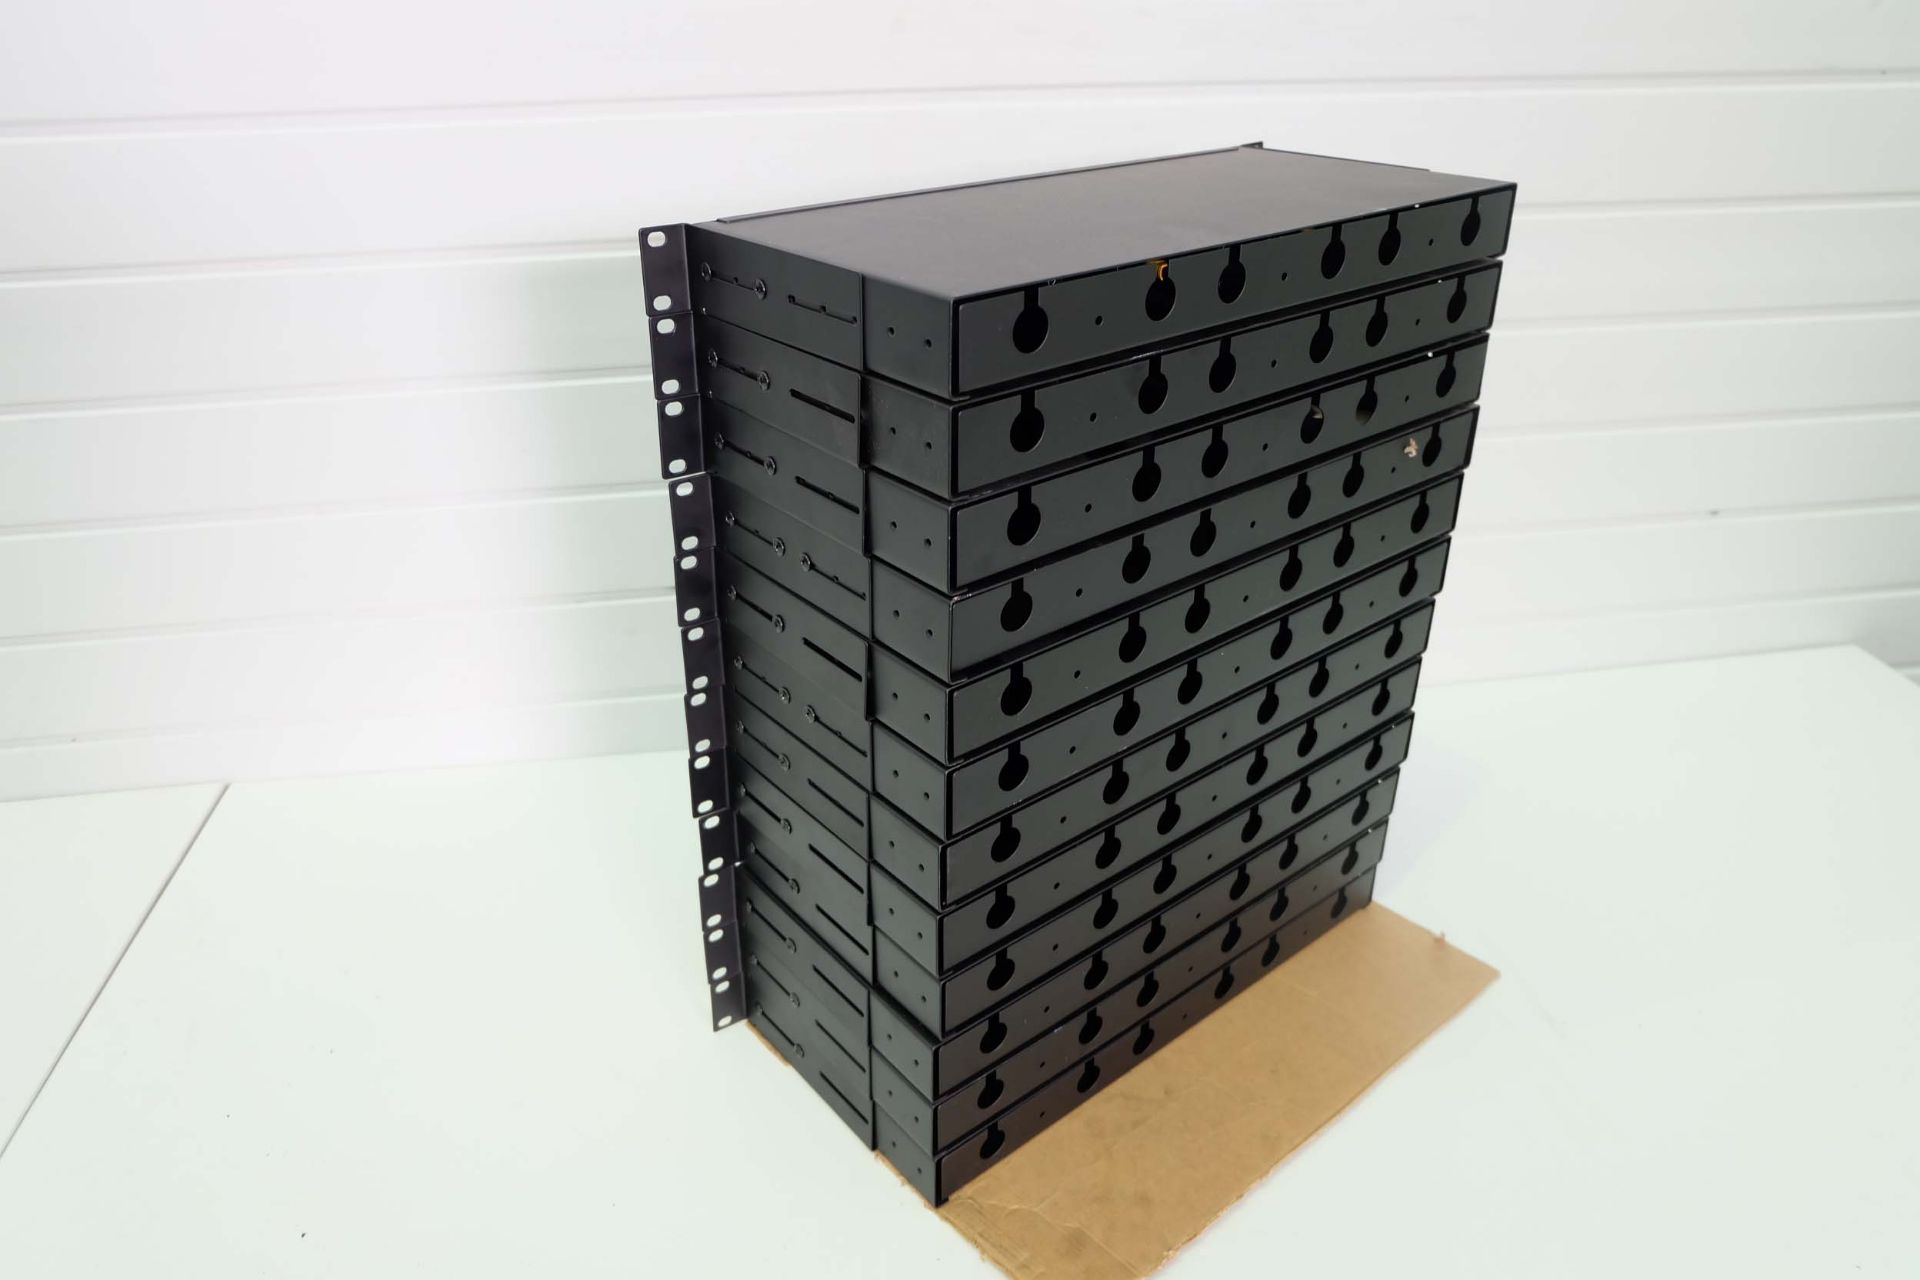 9 x Fibre Optic Cassette Patch Panels. Rack Mountable 1U 19". Port, Duplex LC MPO MTP Fibre Optics. - Image 7 of 7